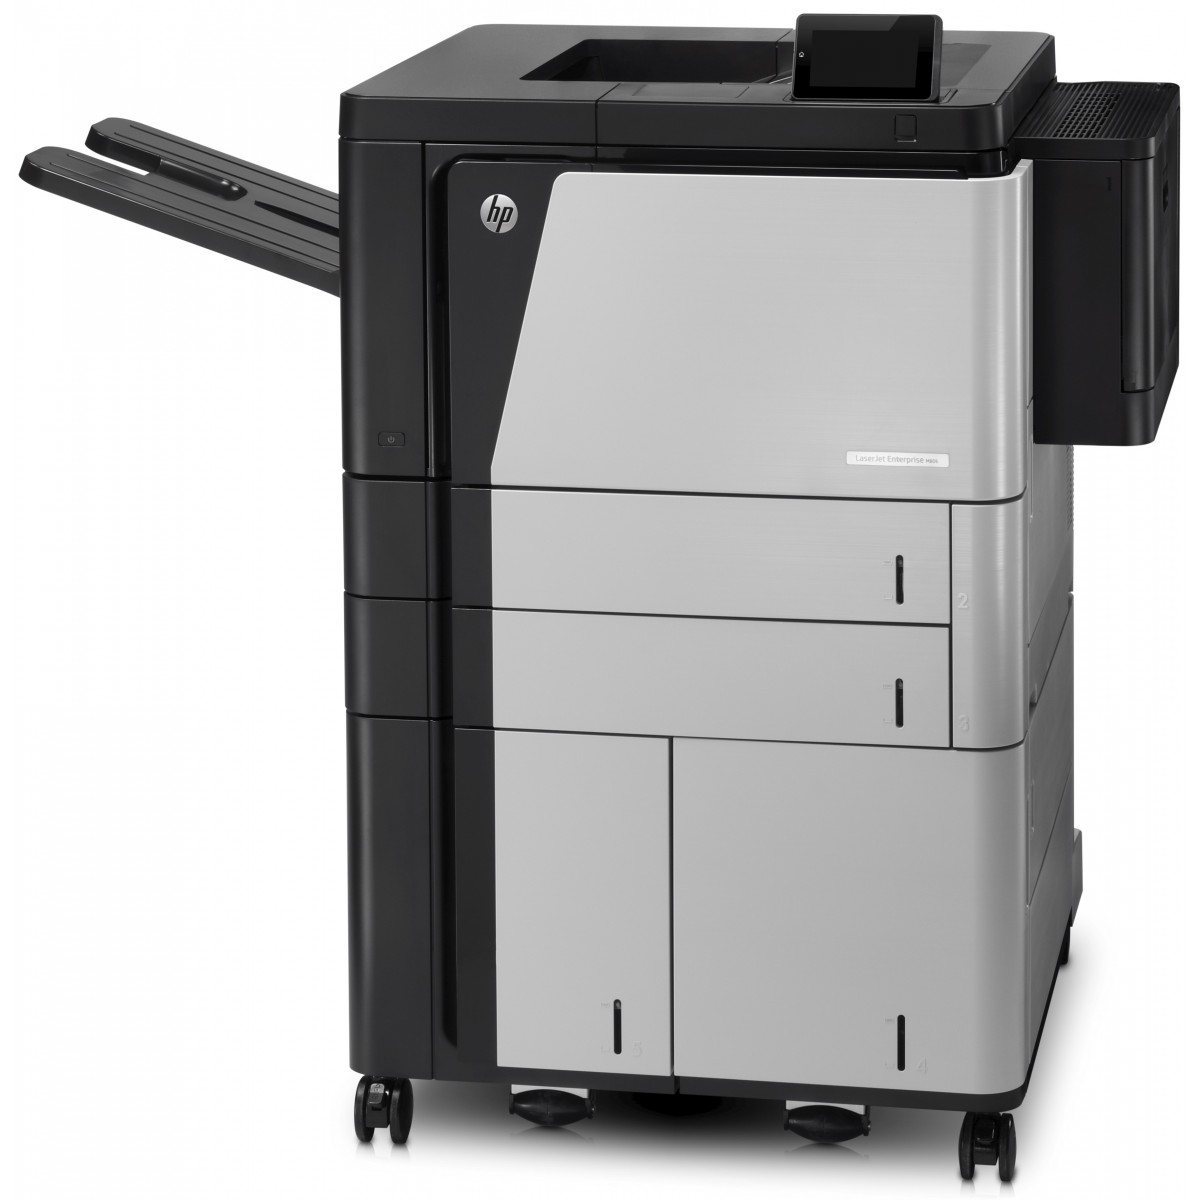 HP LaserJet Enterprise M806x+ - Printer b/w Laser/Led - 1,200 dpi - 56 ppm